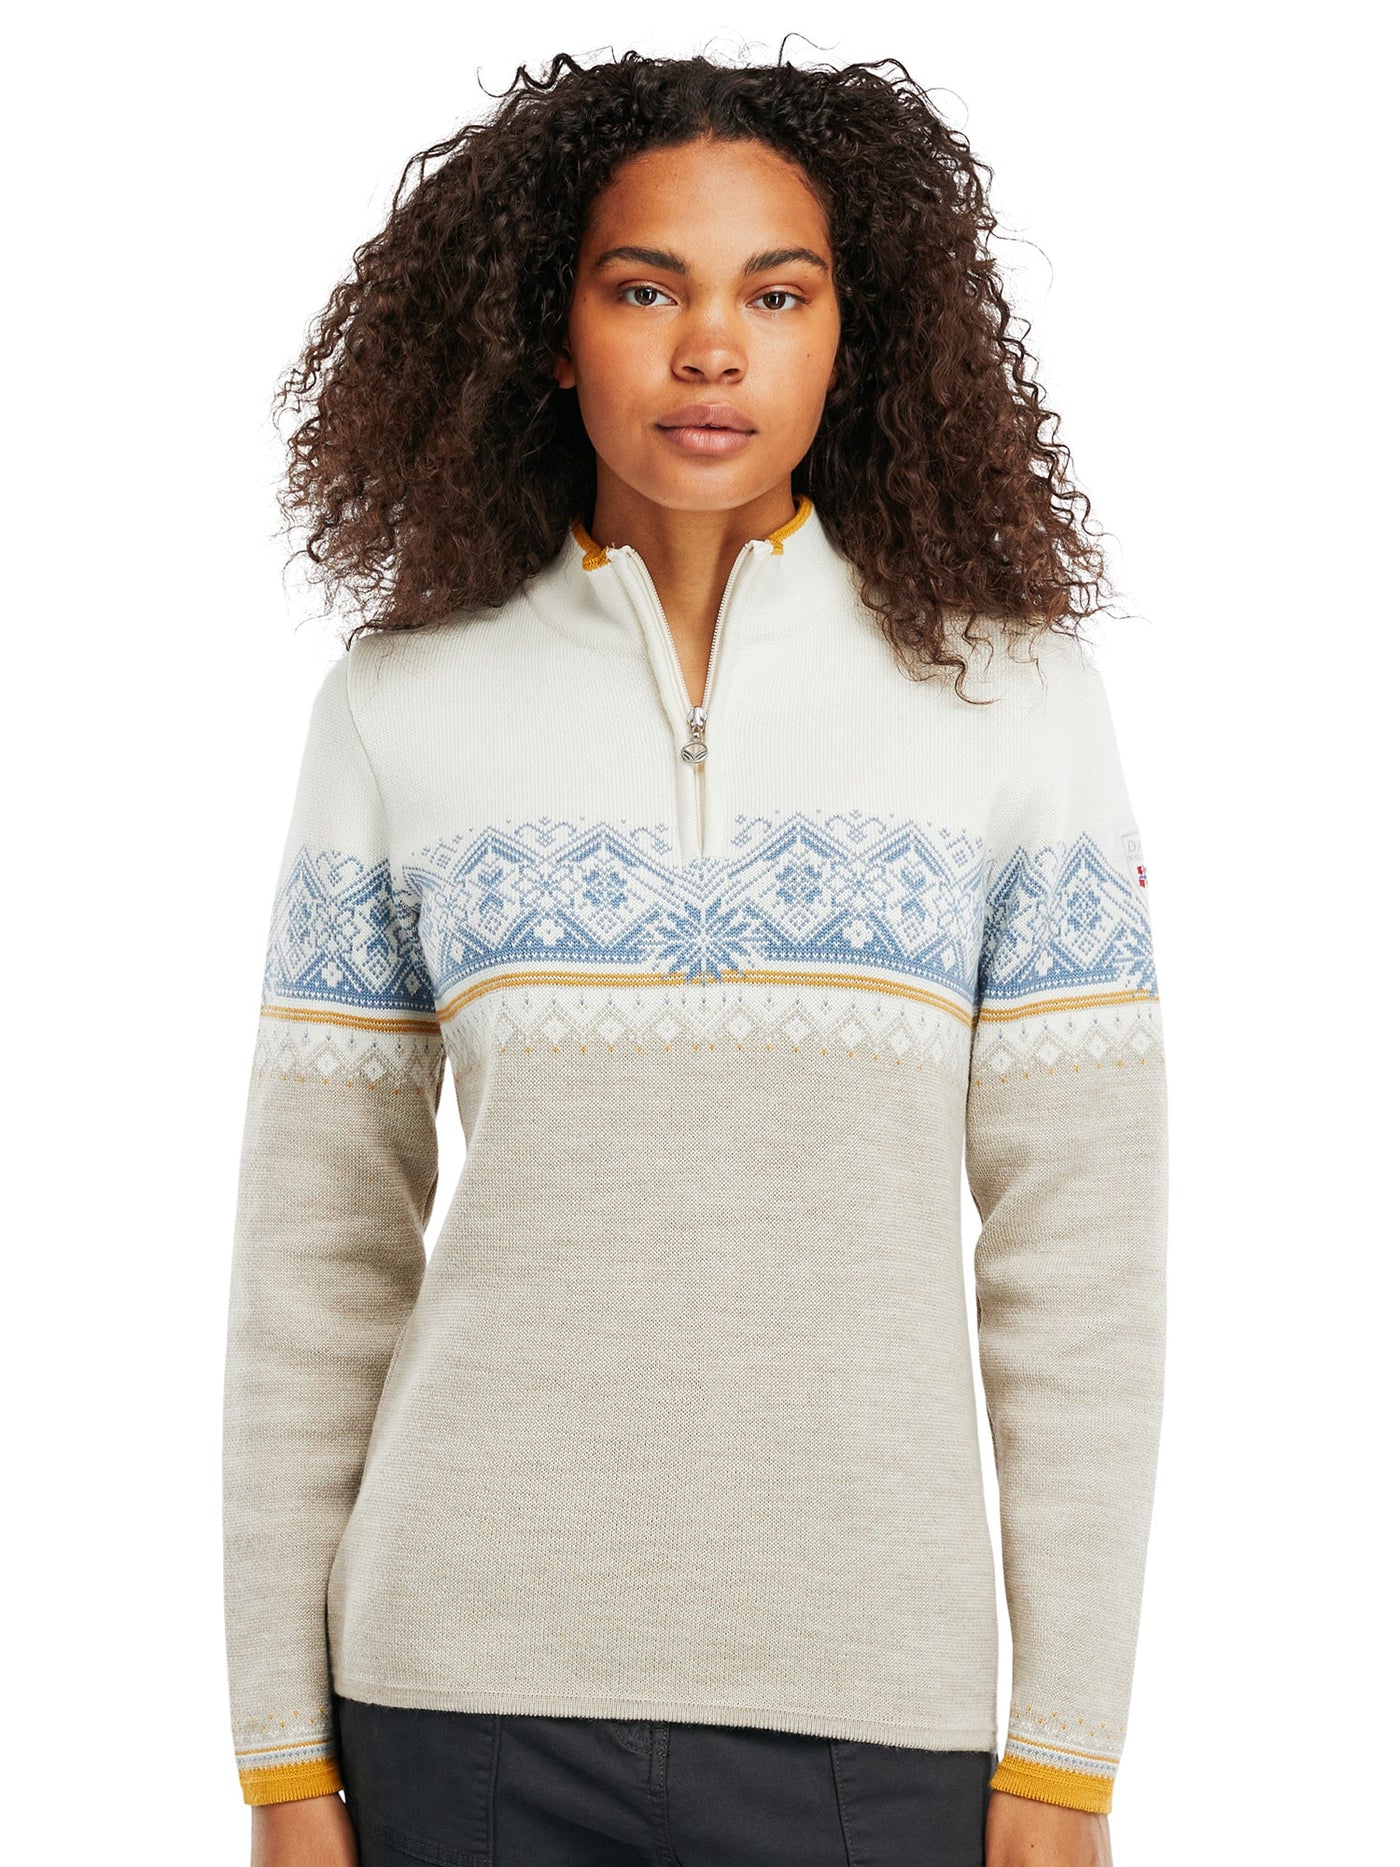 St. Moritz feminine sweater